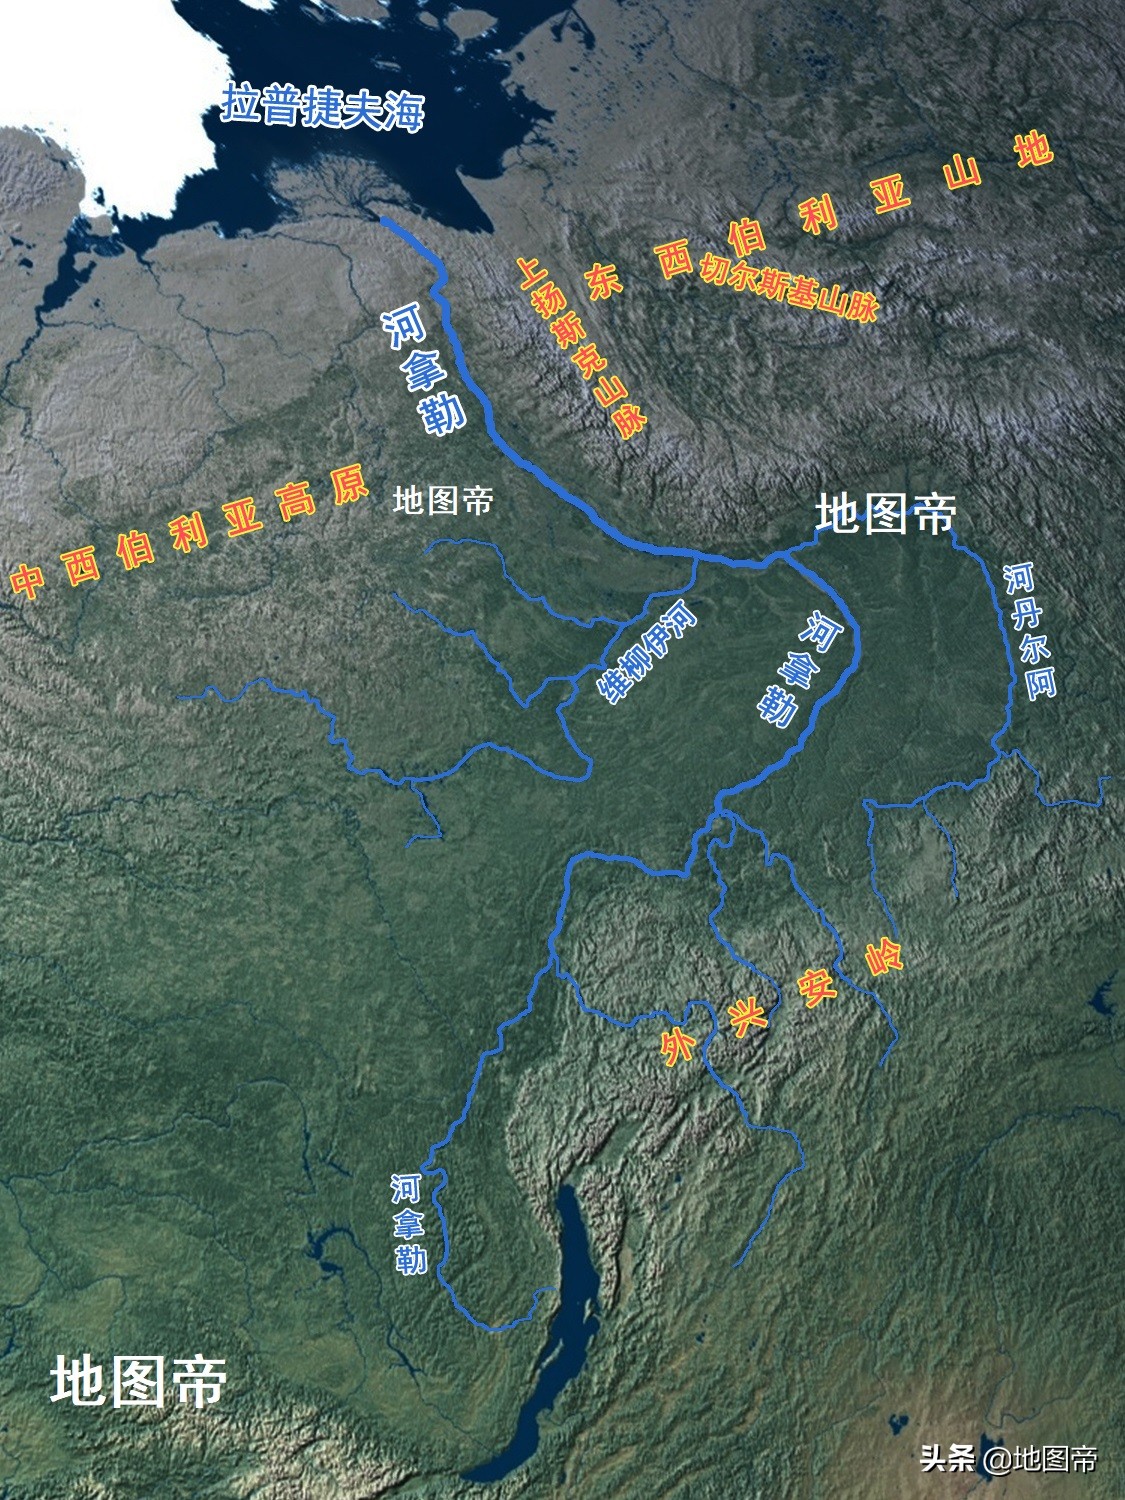 勒拿河干流从西南部进入萨哈共和国,划了一个半圆后向北流,最终注入